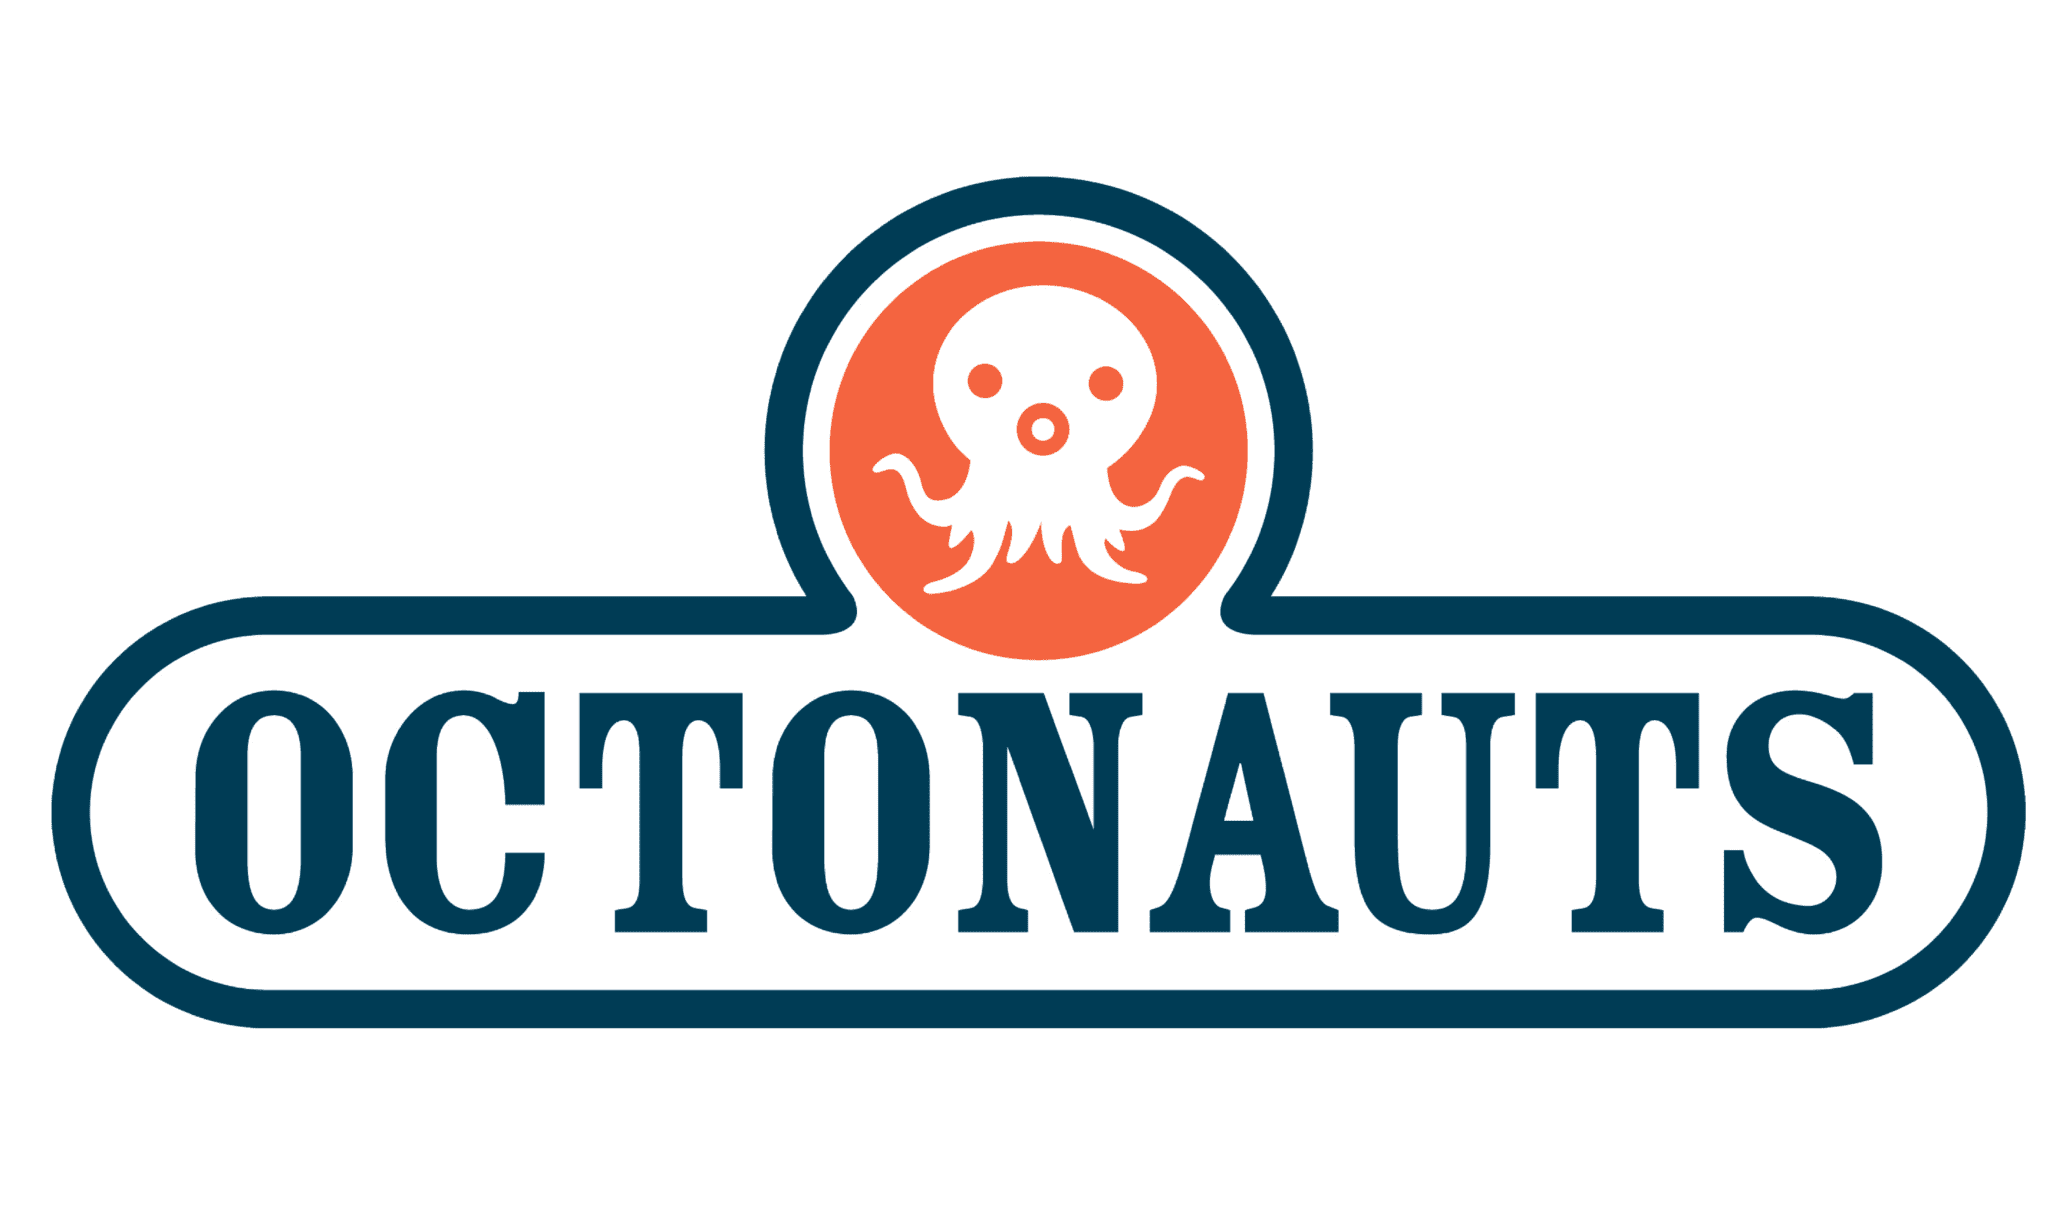 The Octonauts logo